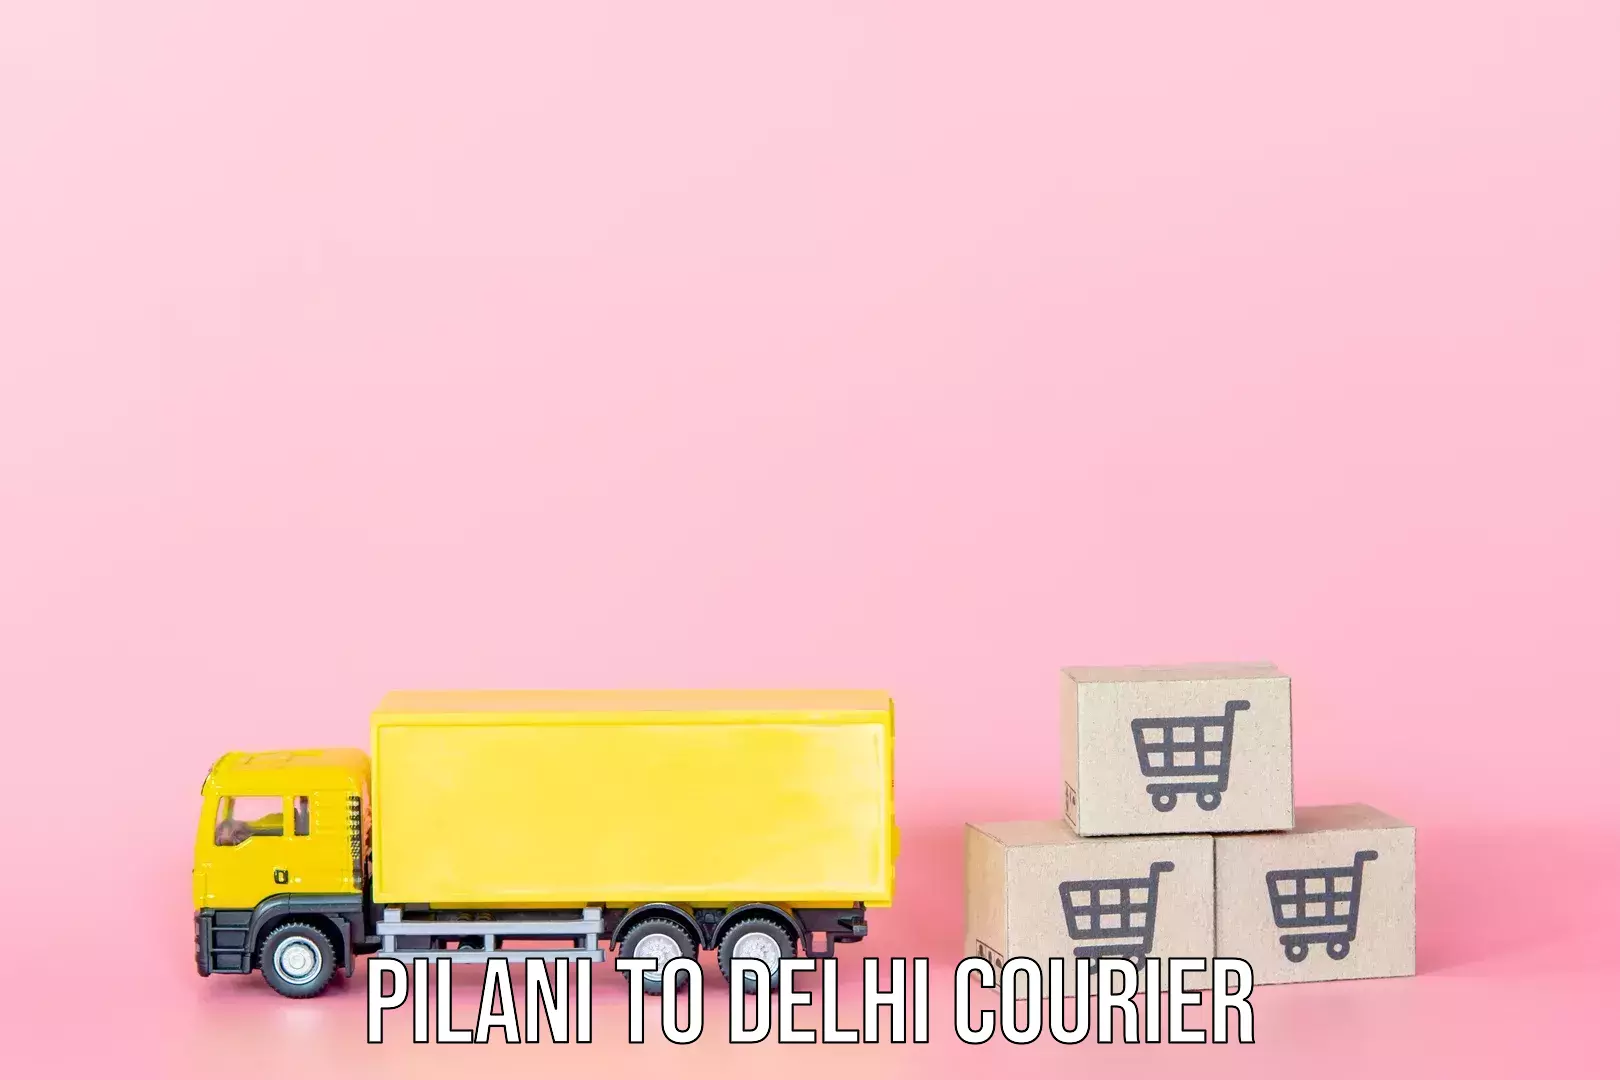 Luggage delivery optimization Pilani to Delhi